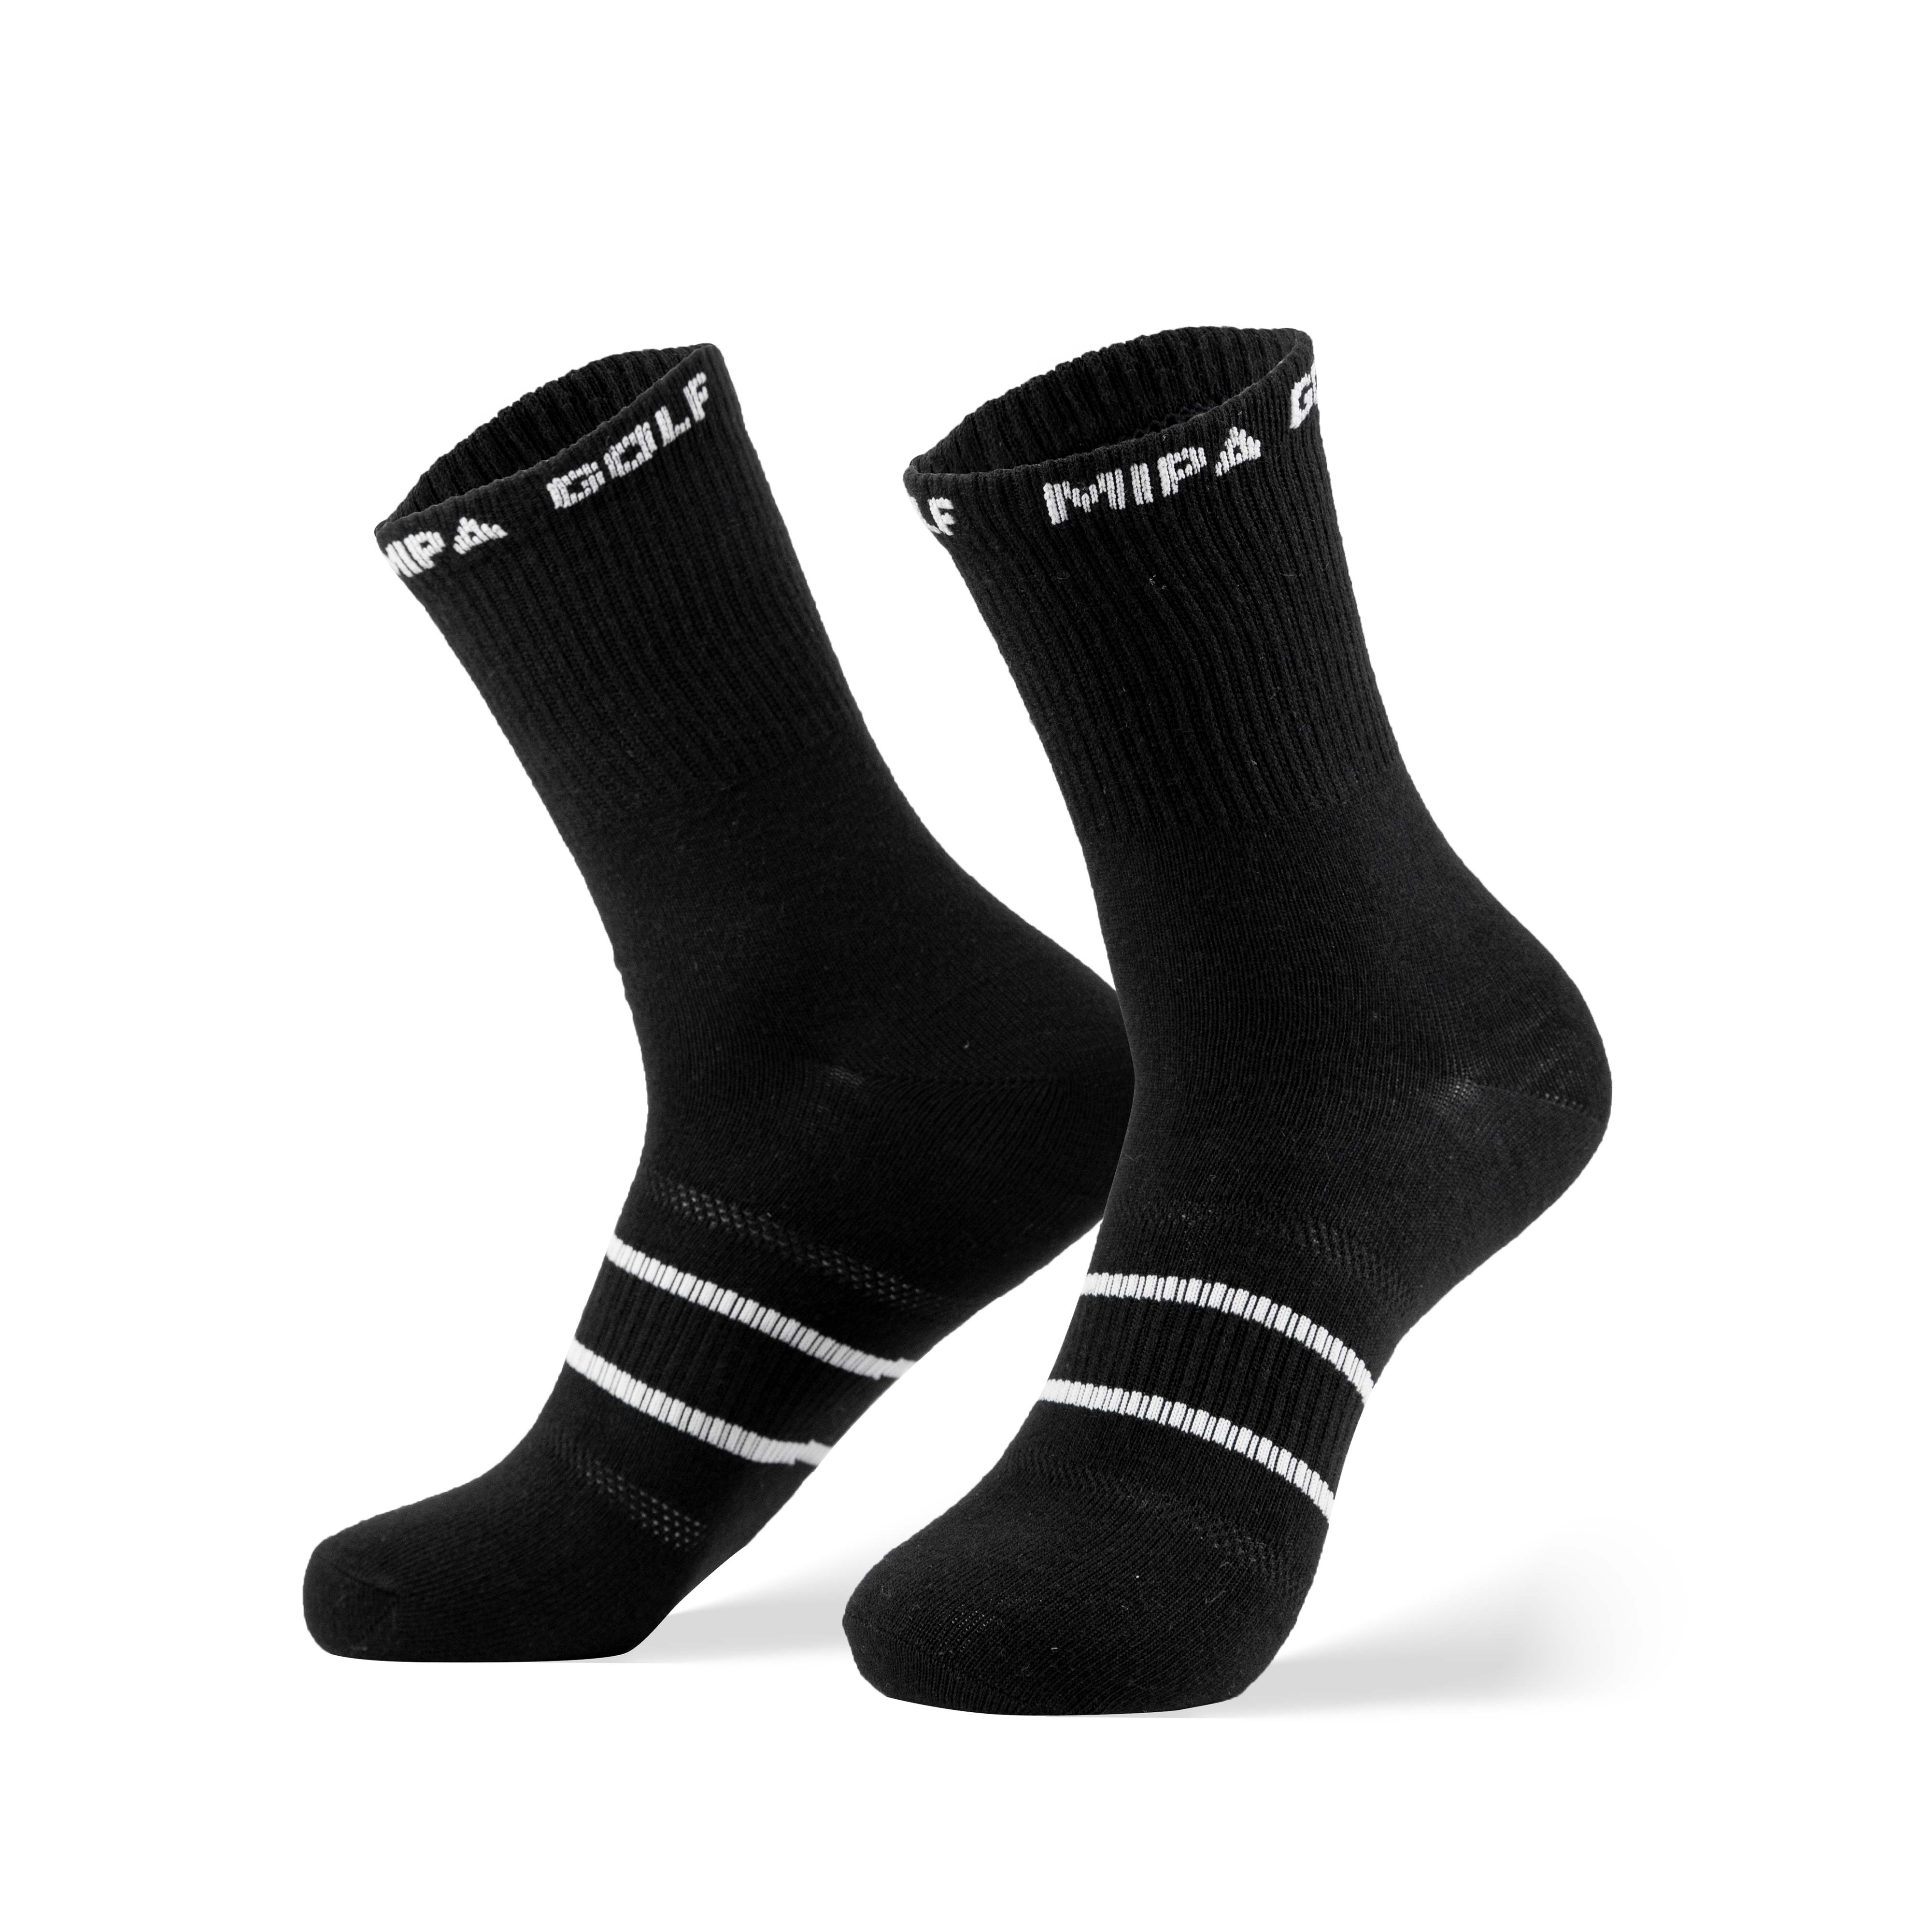 Basic Socks